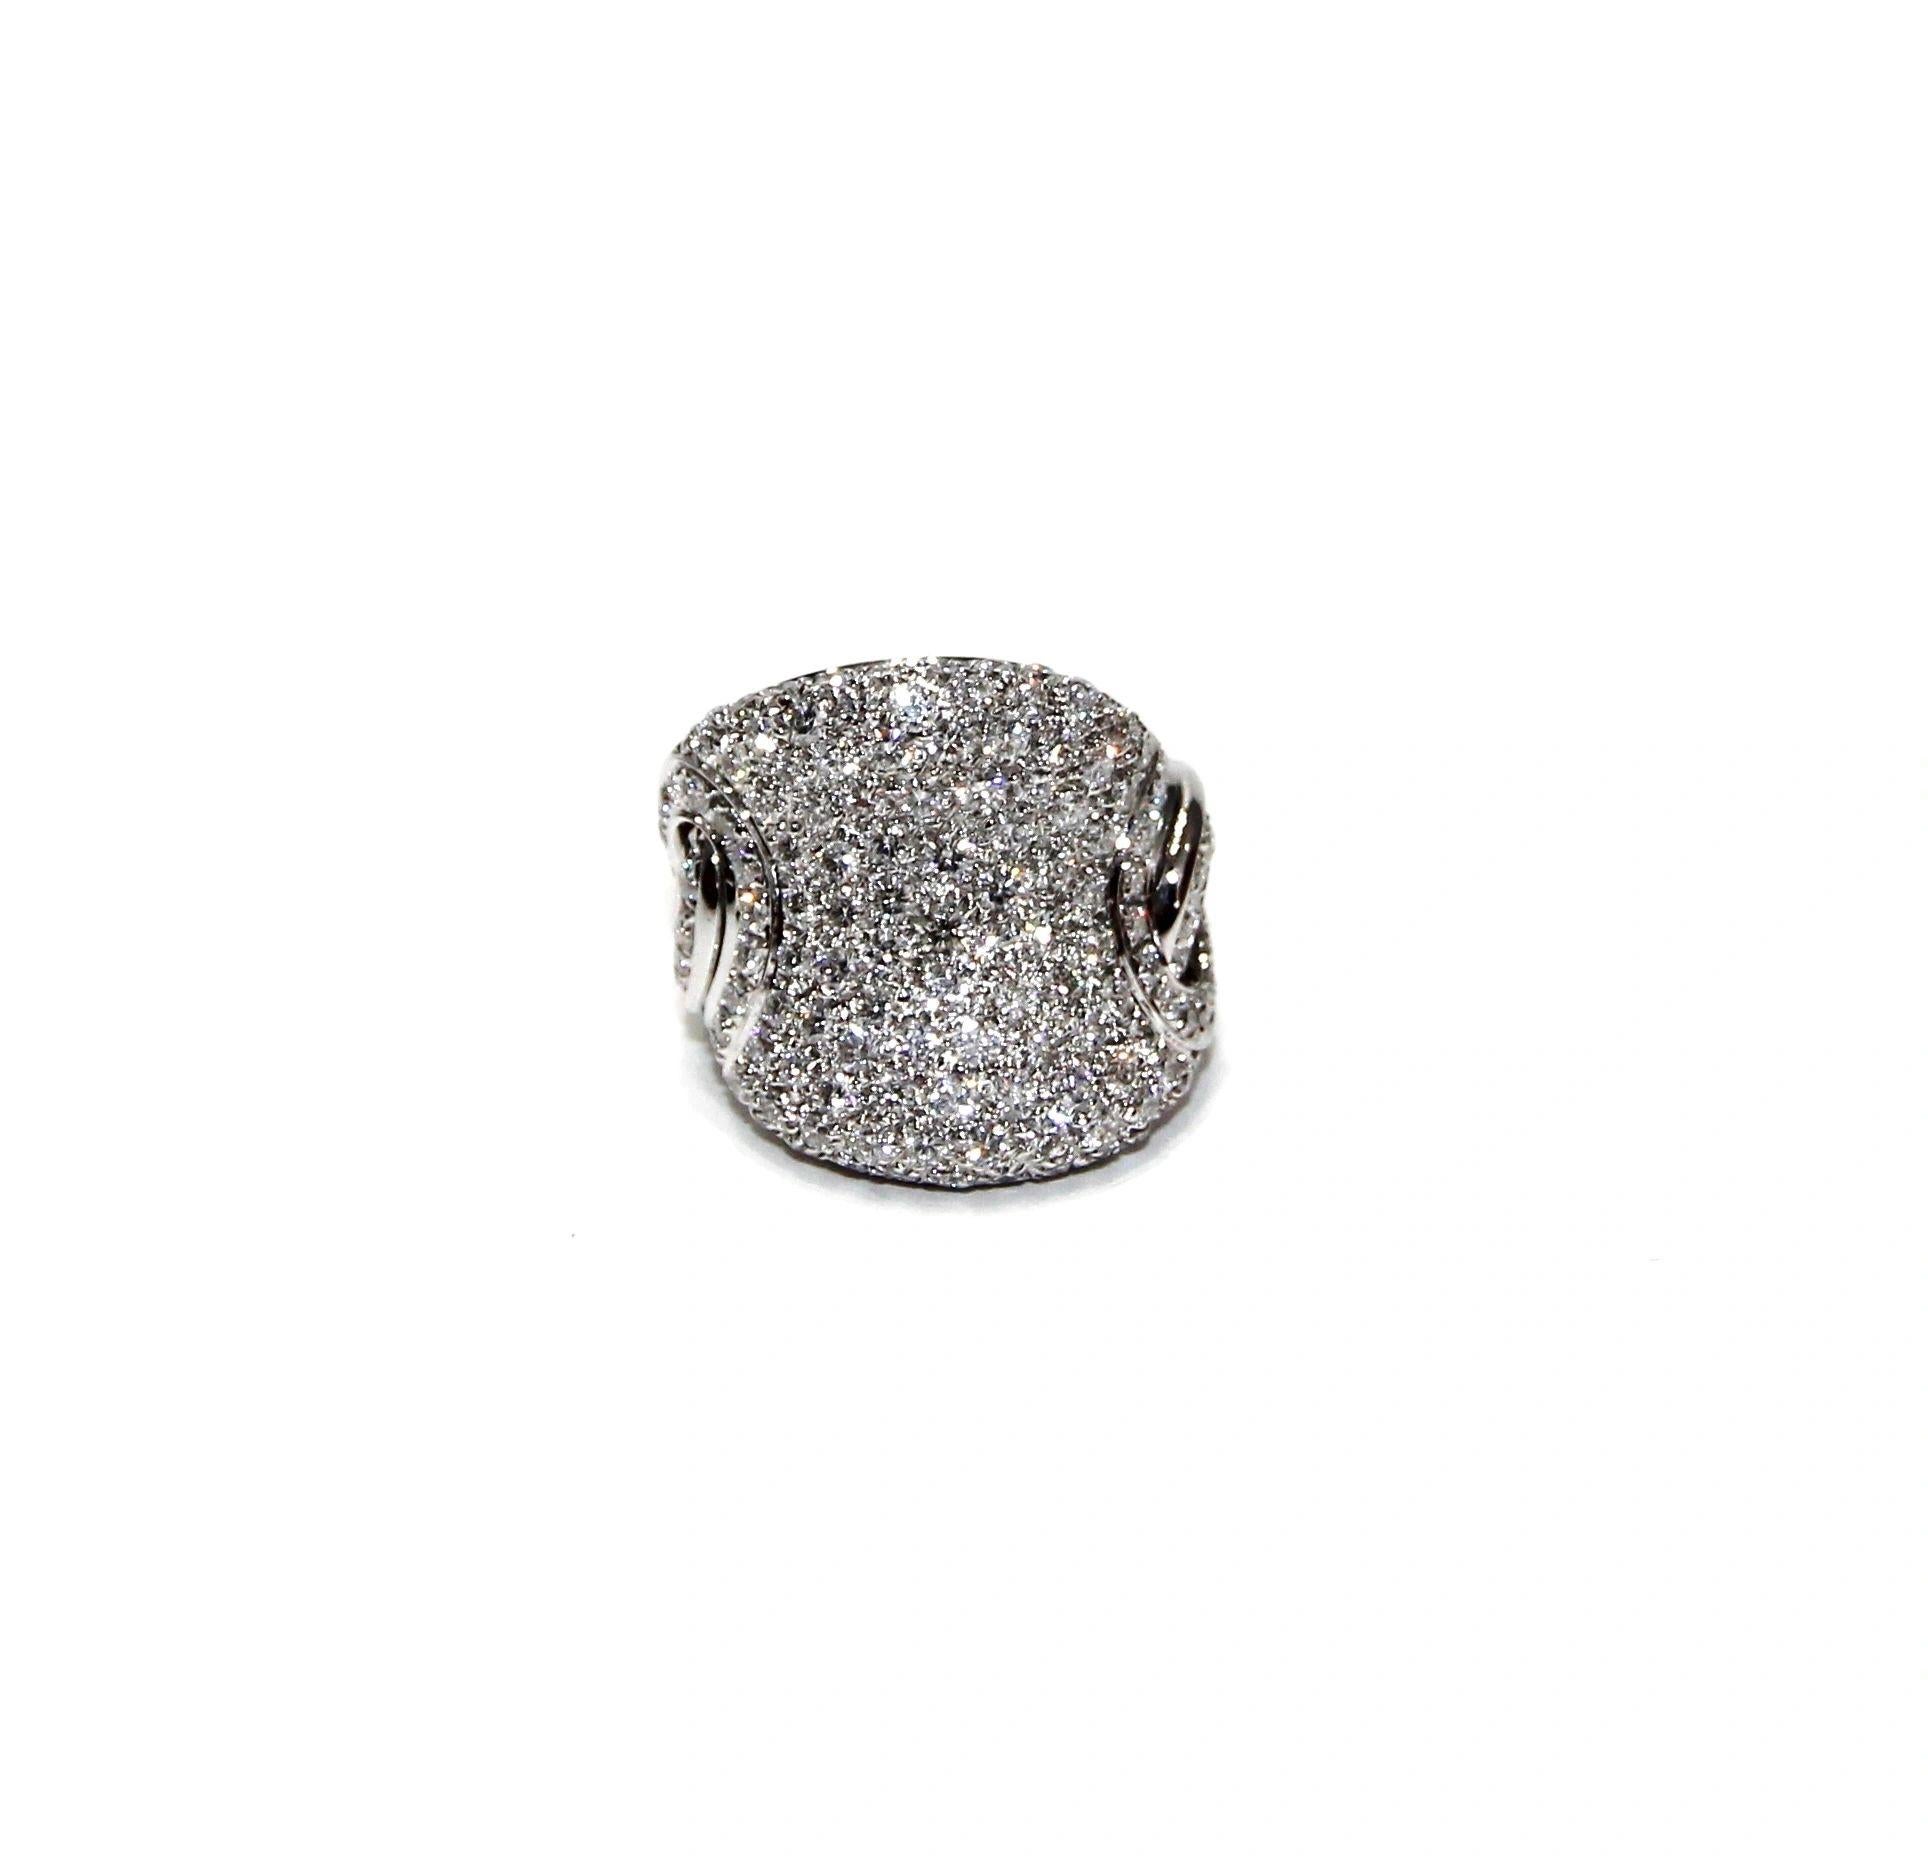 Pavé-Ring aus 18 Karat Weißgold mit Diamanten von Leo Pizzo
Diamant: 3,04ctw
Farbe: G-H
Klarheit: VS1/VS2
Ringgröße: 6
SKU: LPO01327
Einzelhandelspreis: $17.695,00